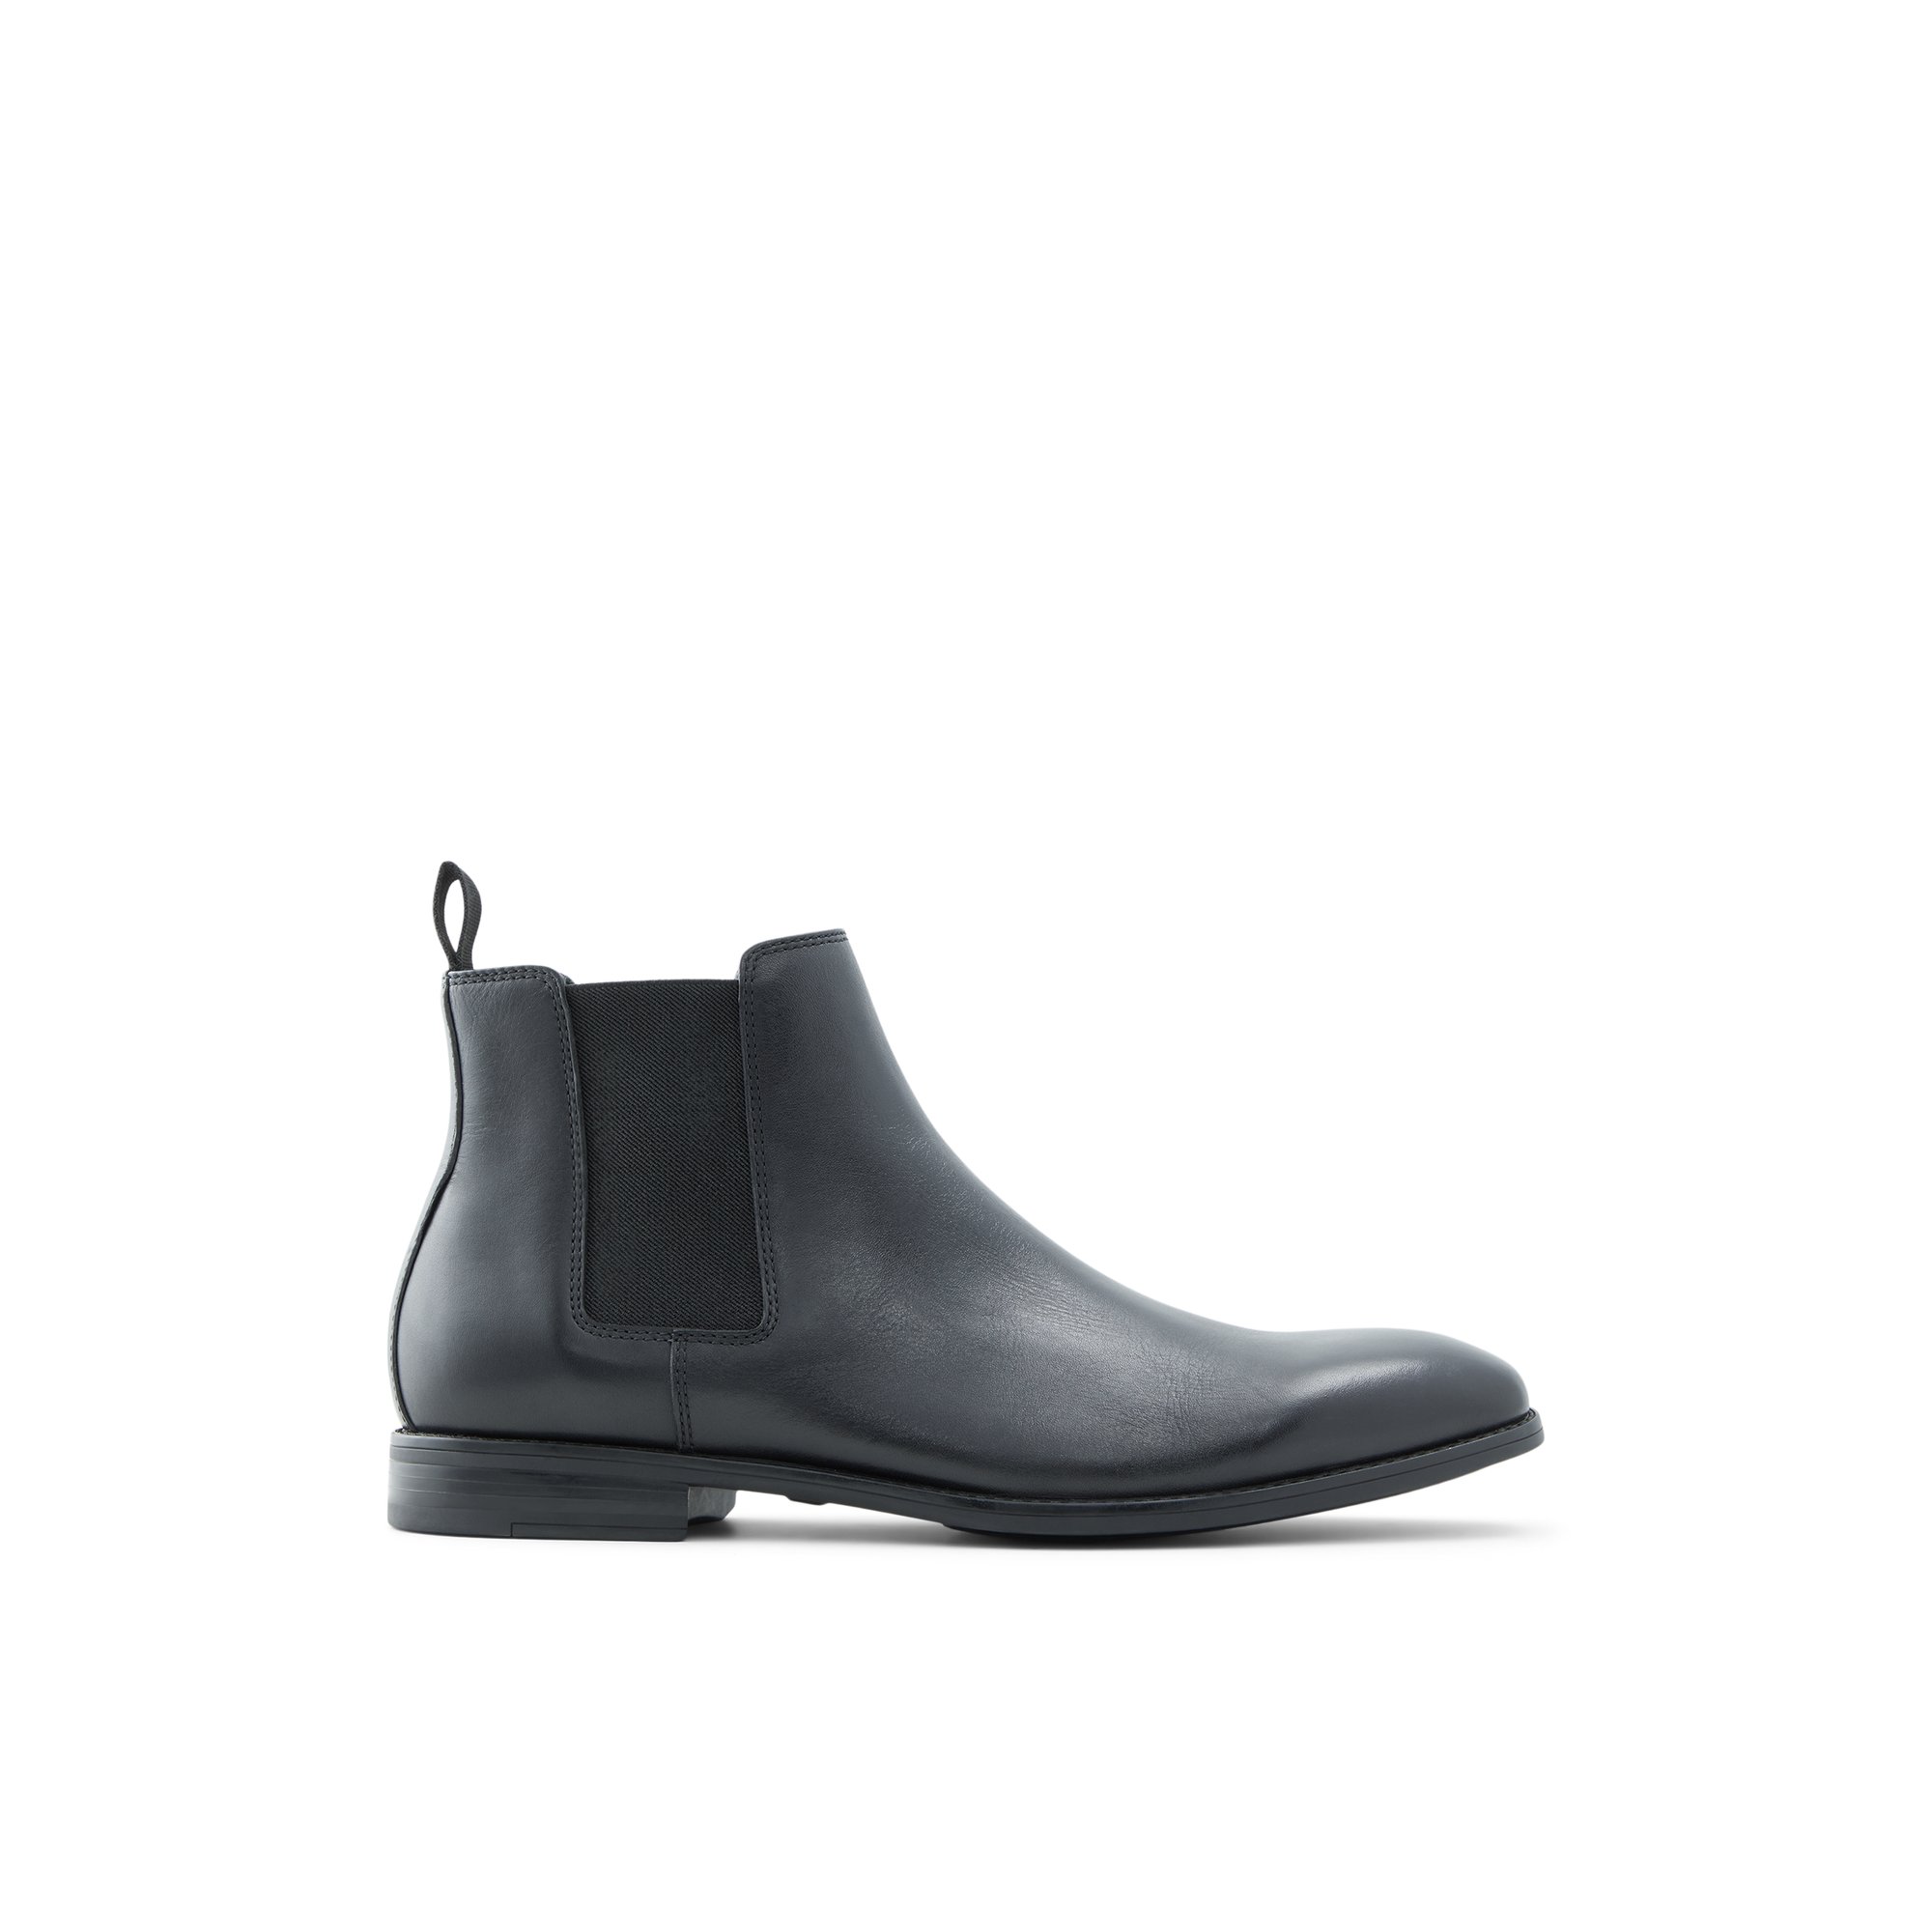 Image of ALDO Aboide - Men's Chelsea Boot - Black, Size 10